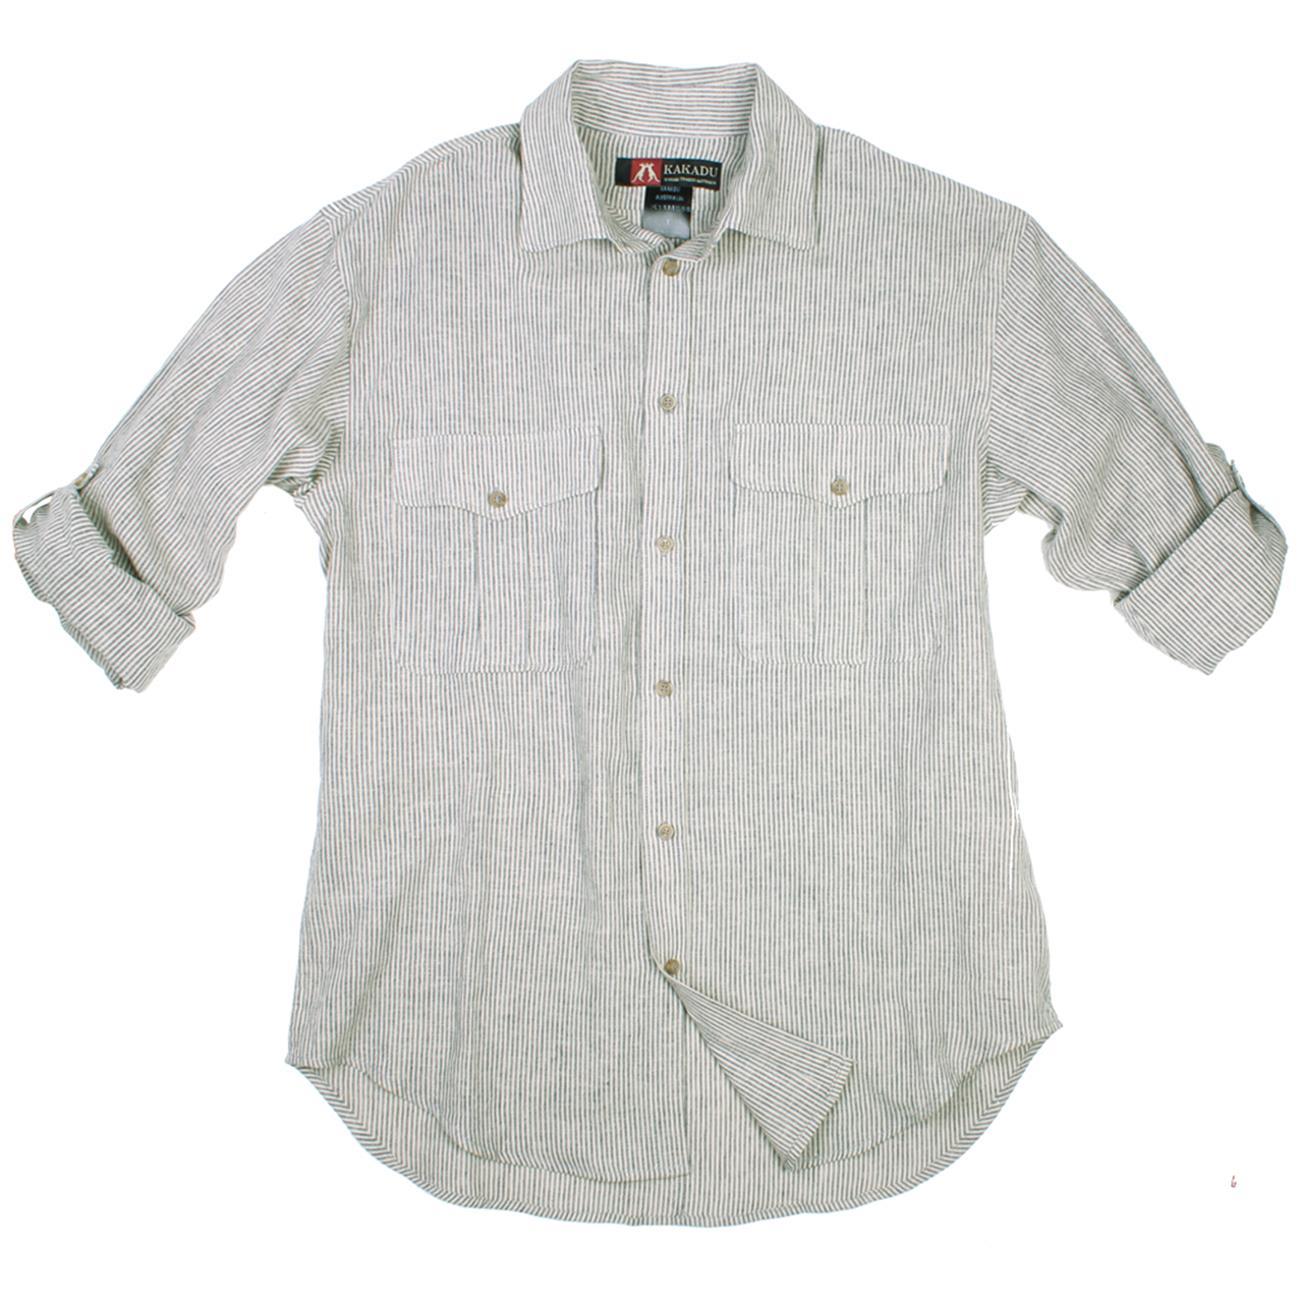 Freizeit | Sommer Hemd- Oberhemd aus leichtem Baumwolle-Leinen | Langarm - OUT OF AUSTRALIA | Kakadu Traders Australia